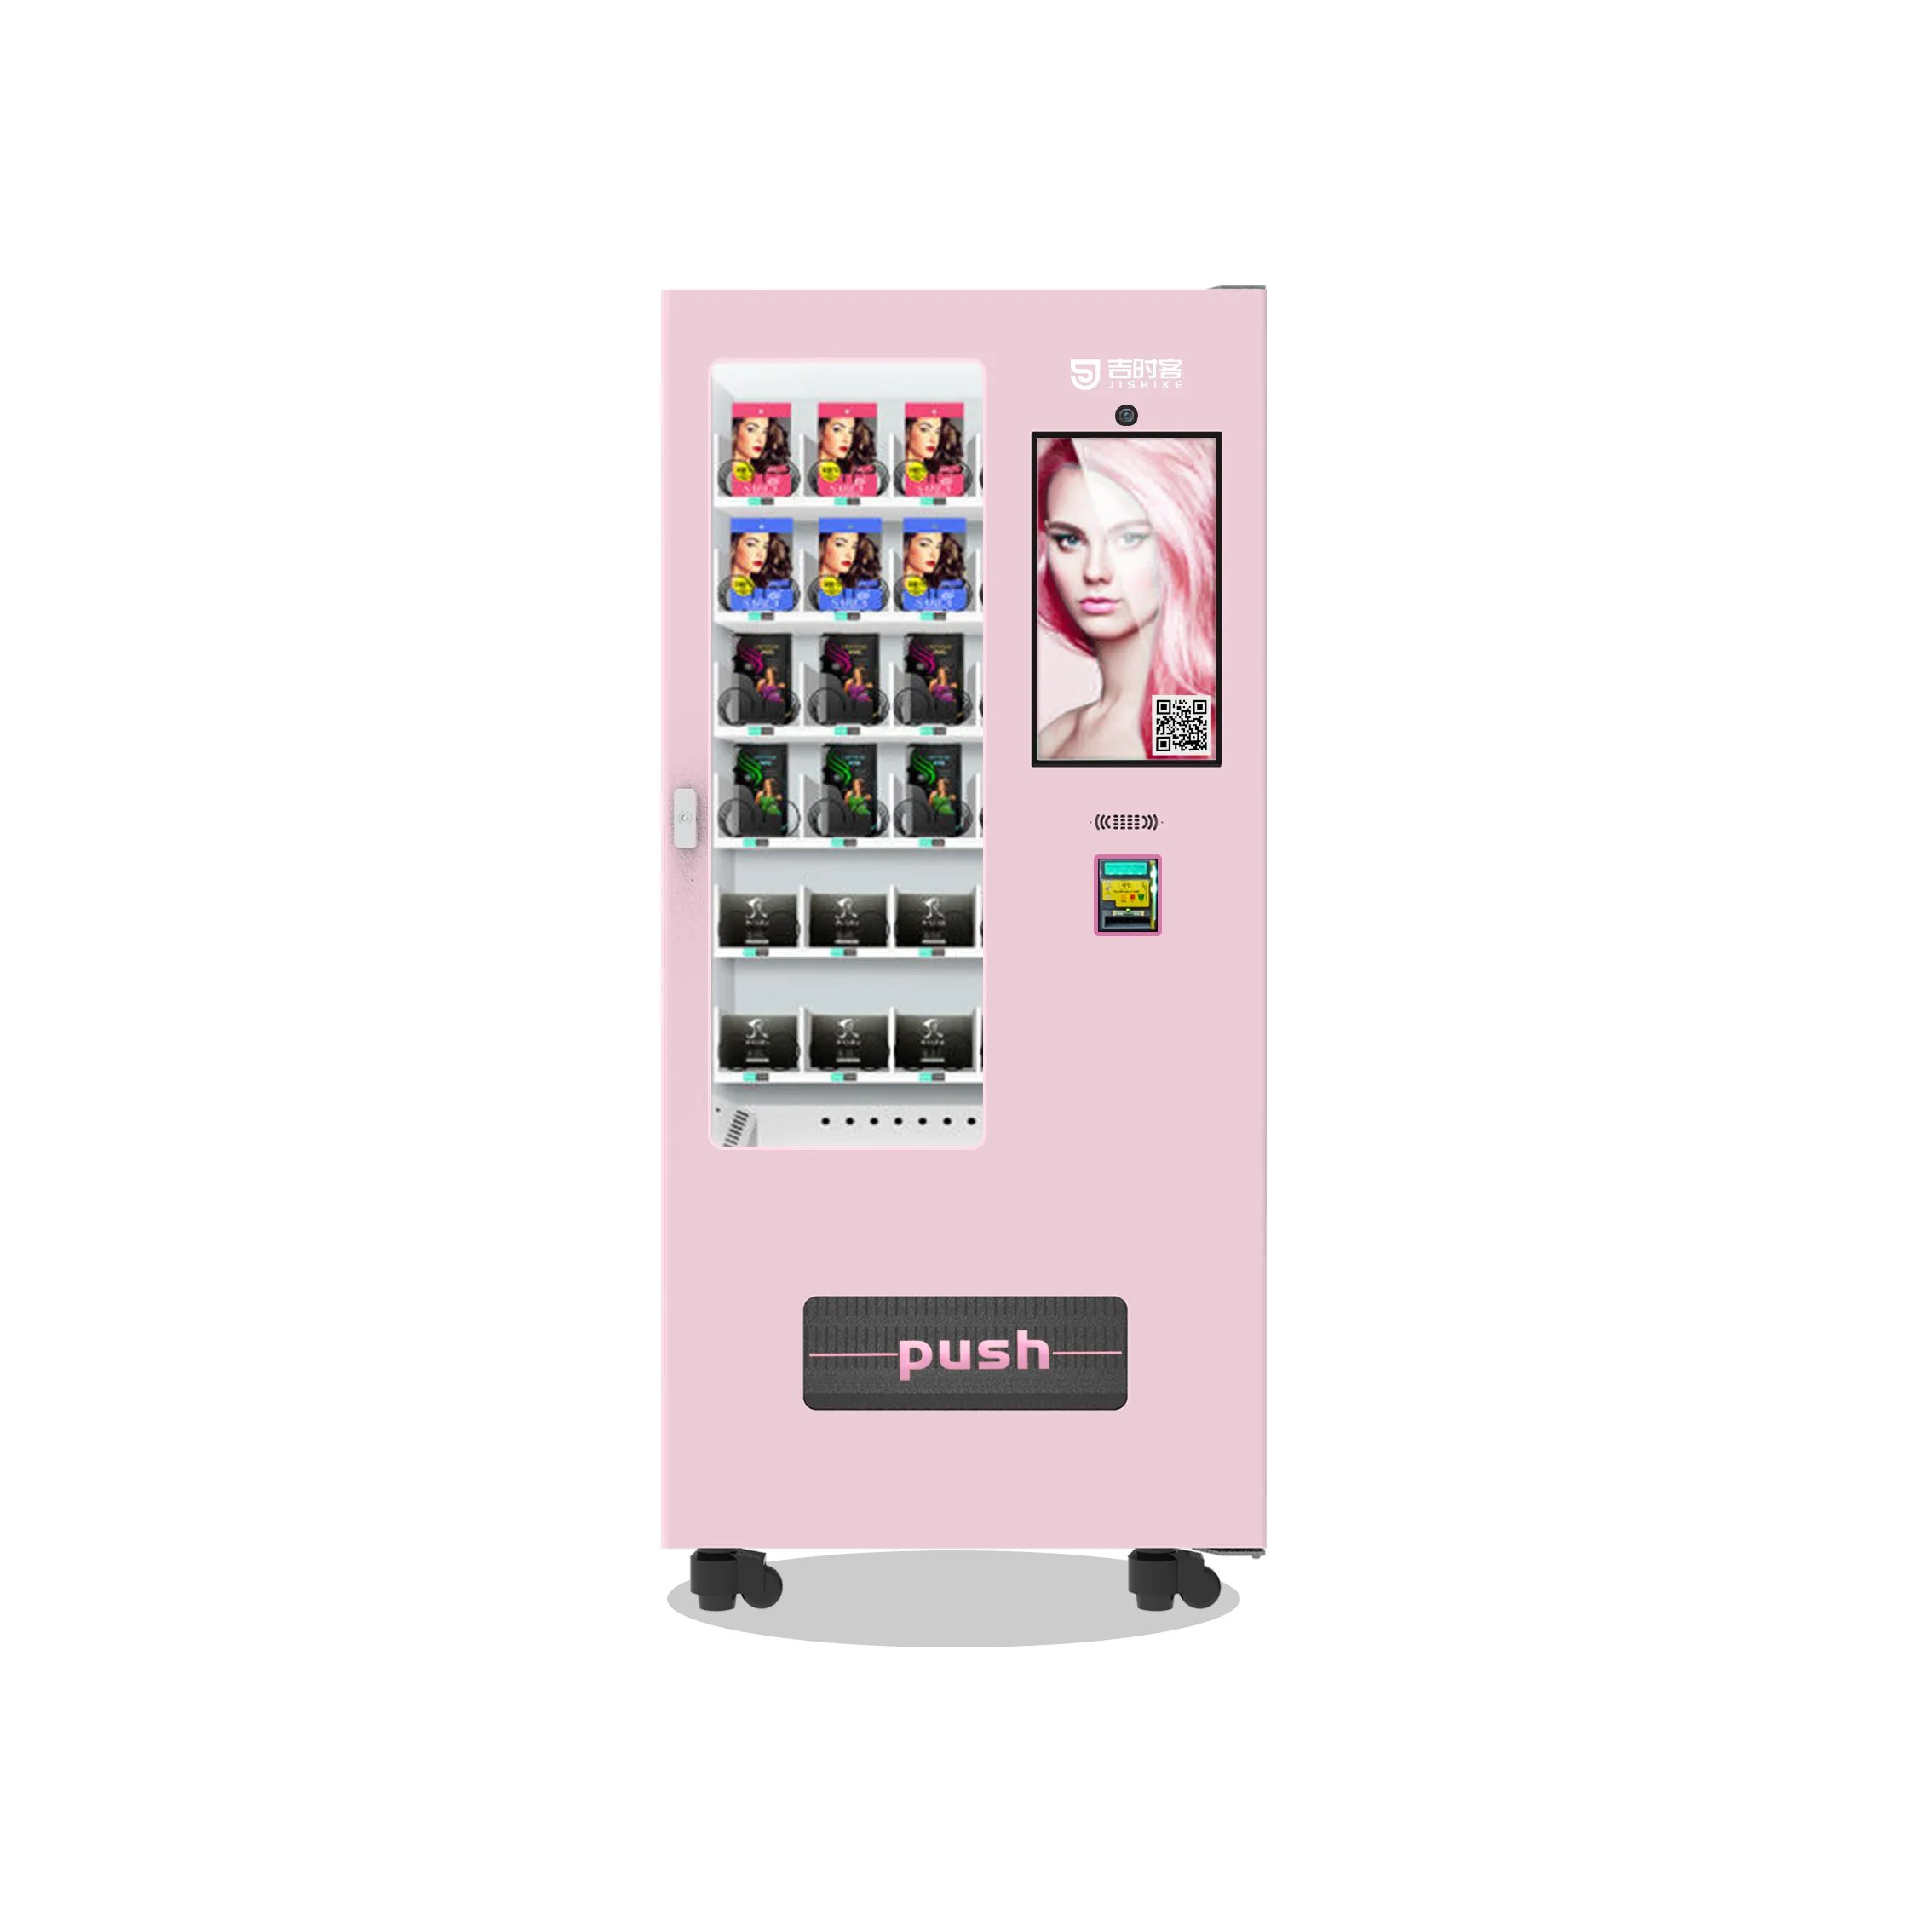 آلة بيع صغيرة للأطعمة والمشروبات / الوجبات الخفيفة / الحلوى / الواقي الذاتي / آلة بيع تثبيت ذاتي على الحائط